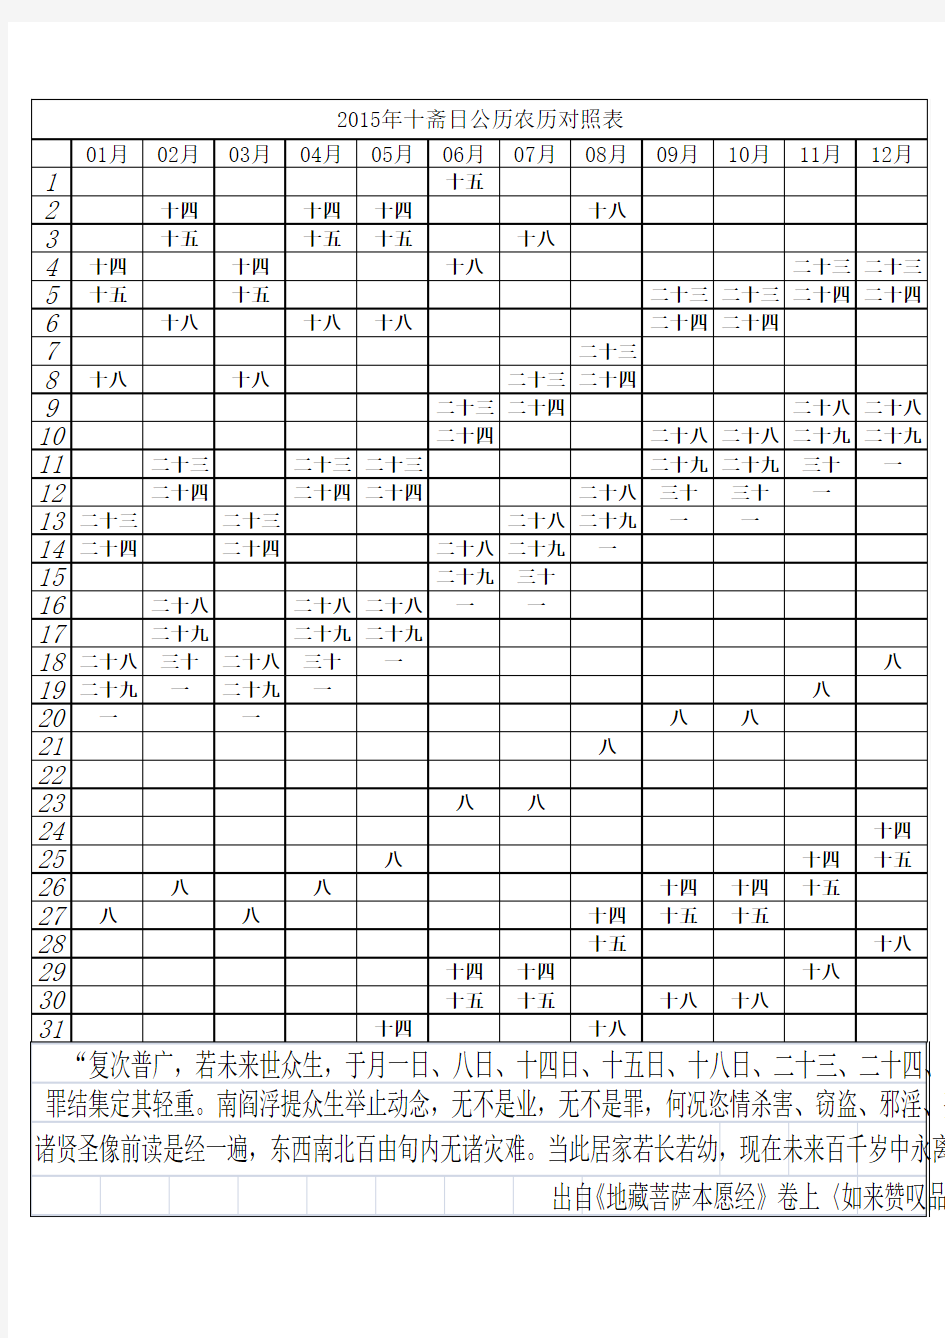 2015年十斋日公历农历对照表(中文)